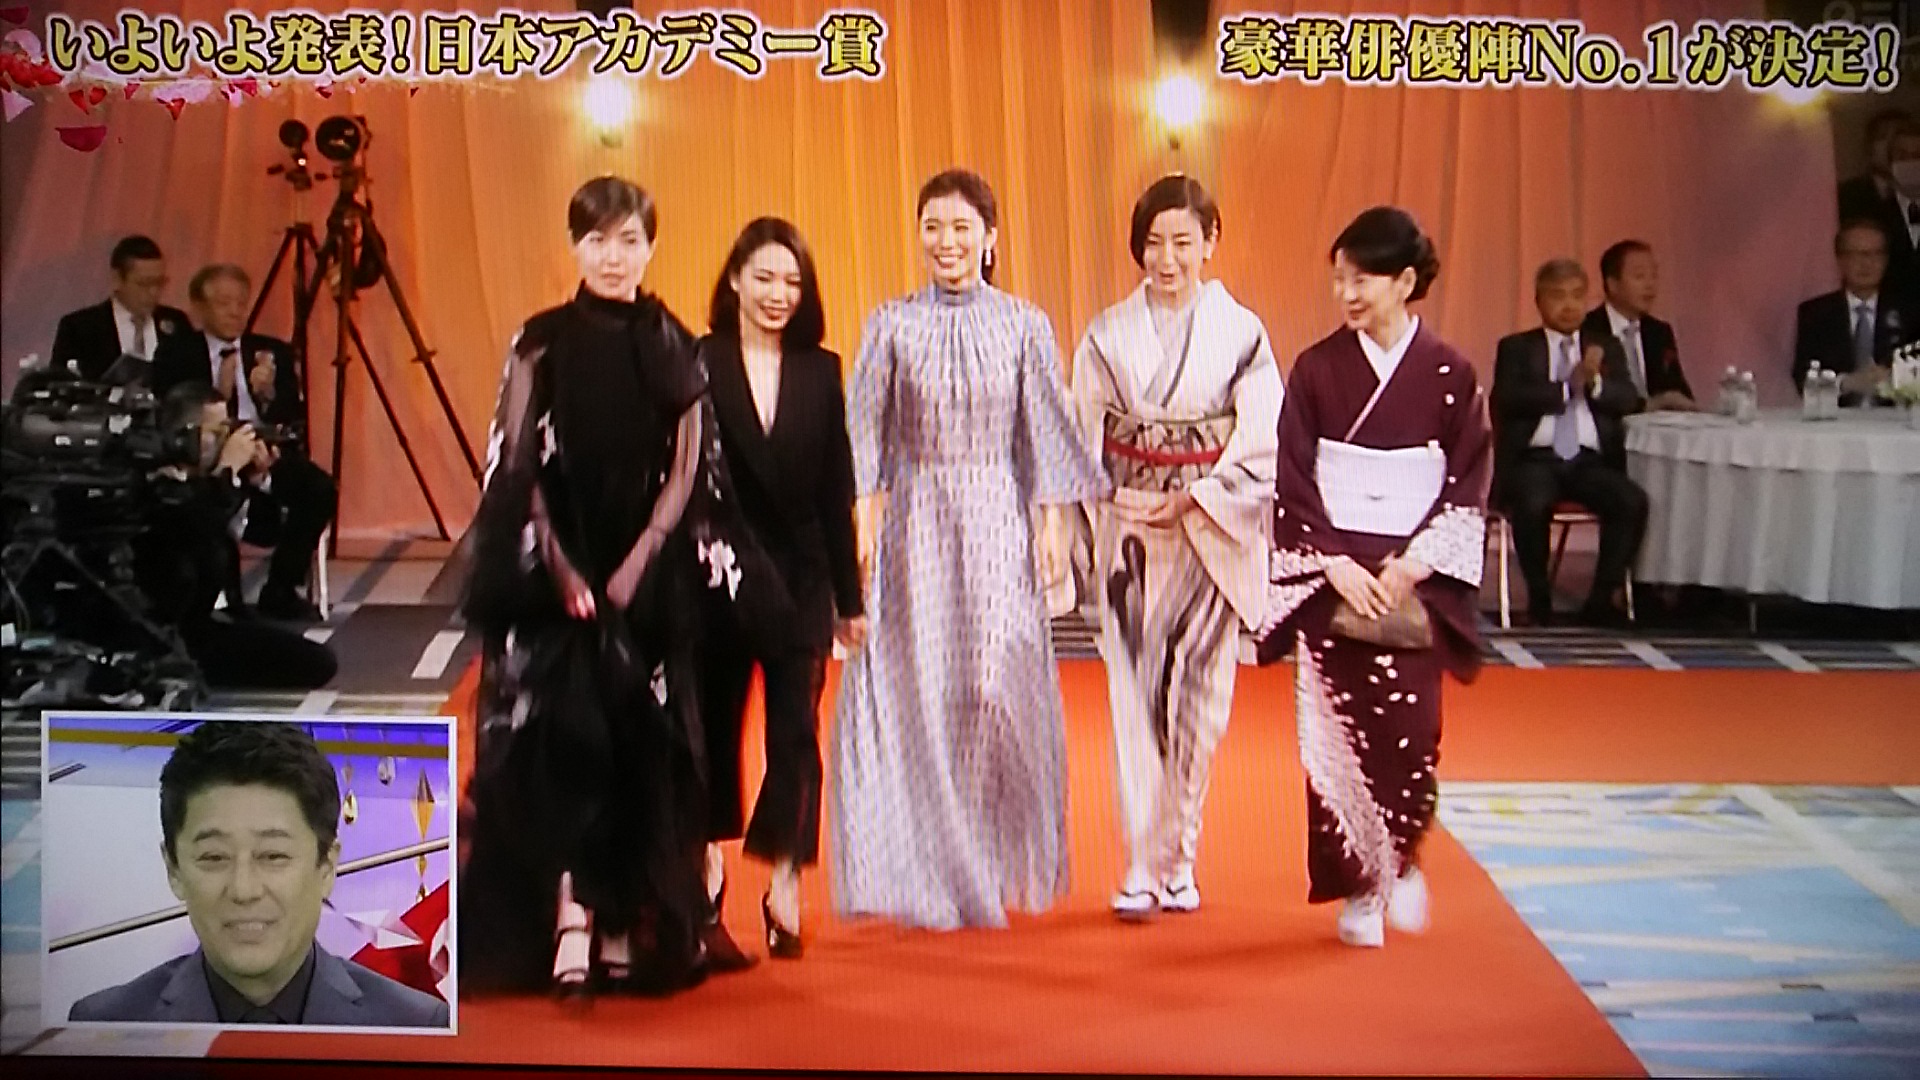 日本アカデミー賞2020のドレス画像まとめ!ダサいorかわいい?【第43回授賞式】